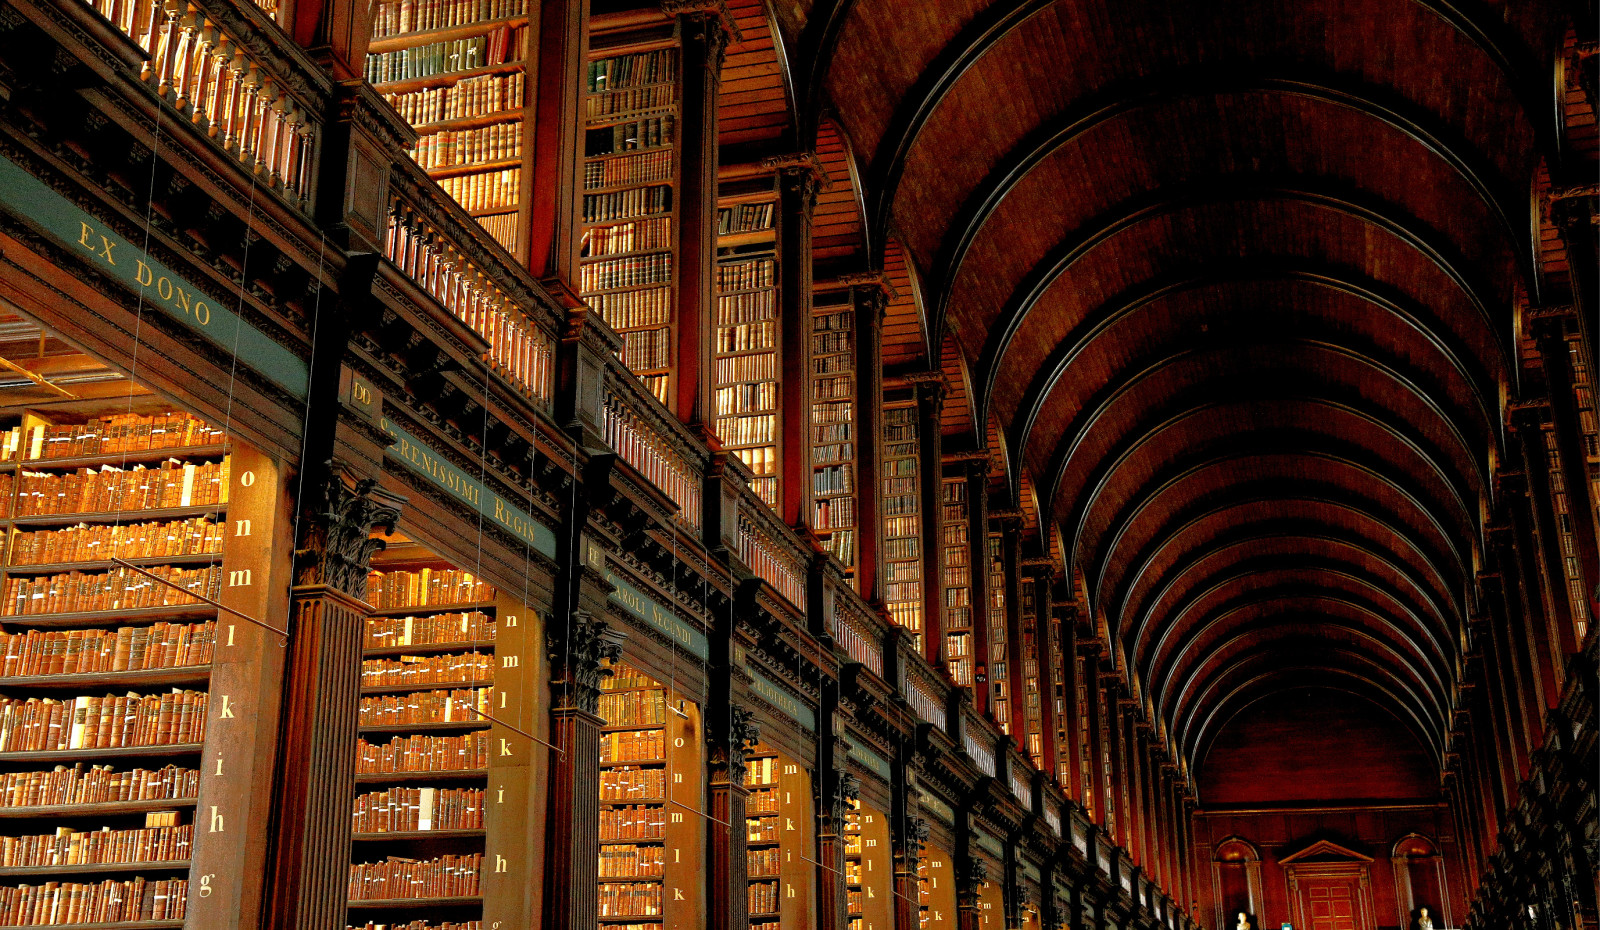 带着魔幻般感觉的爱尔兰圣三一学院图书馆